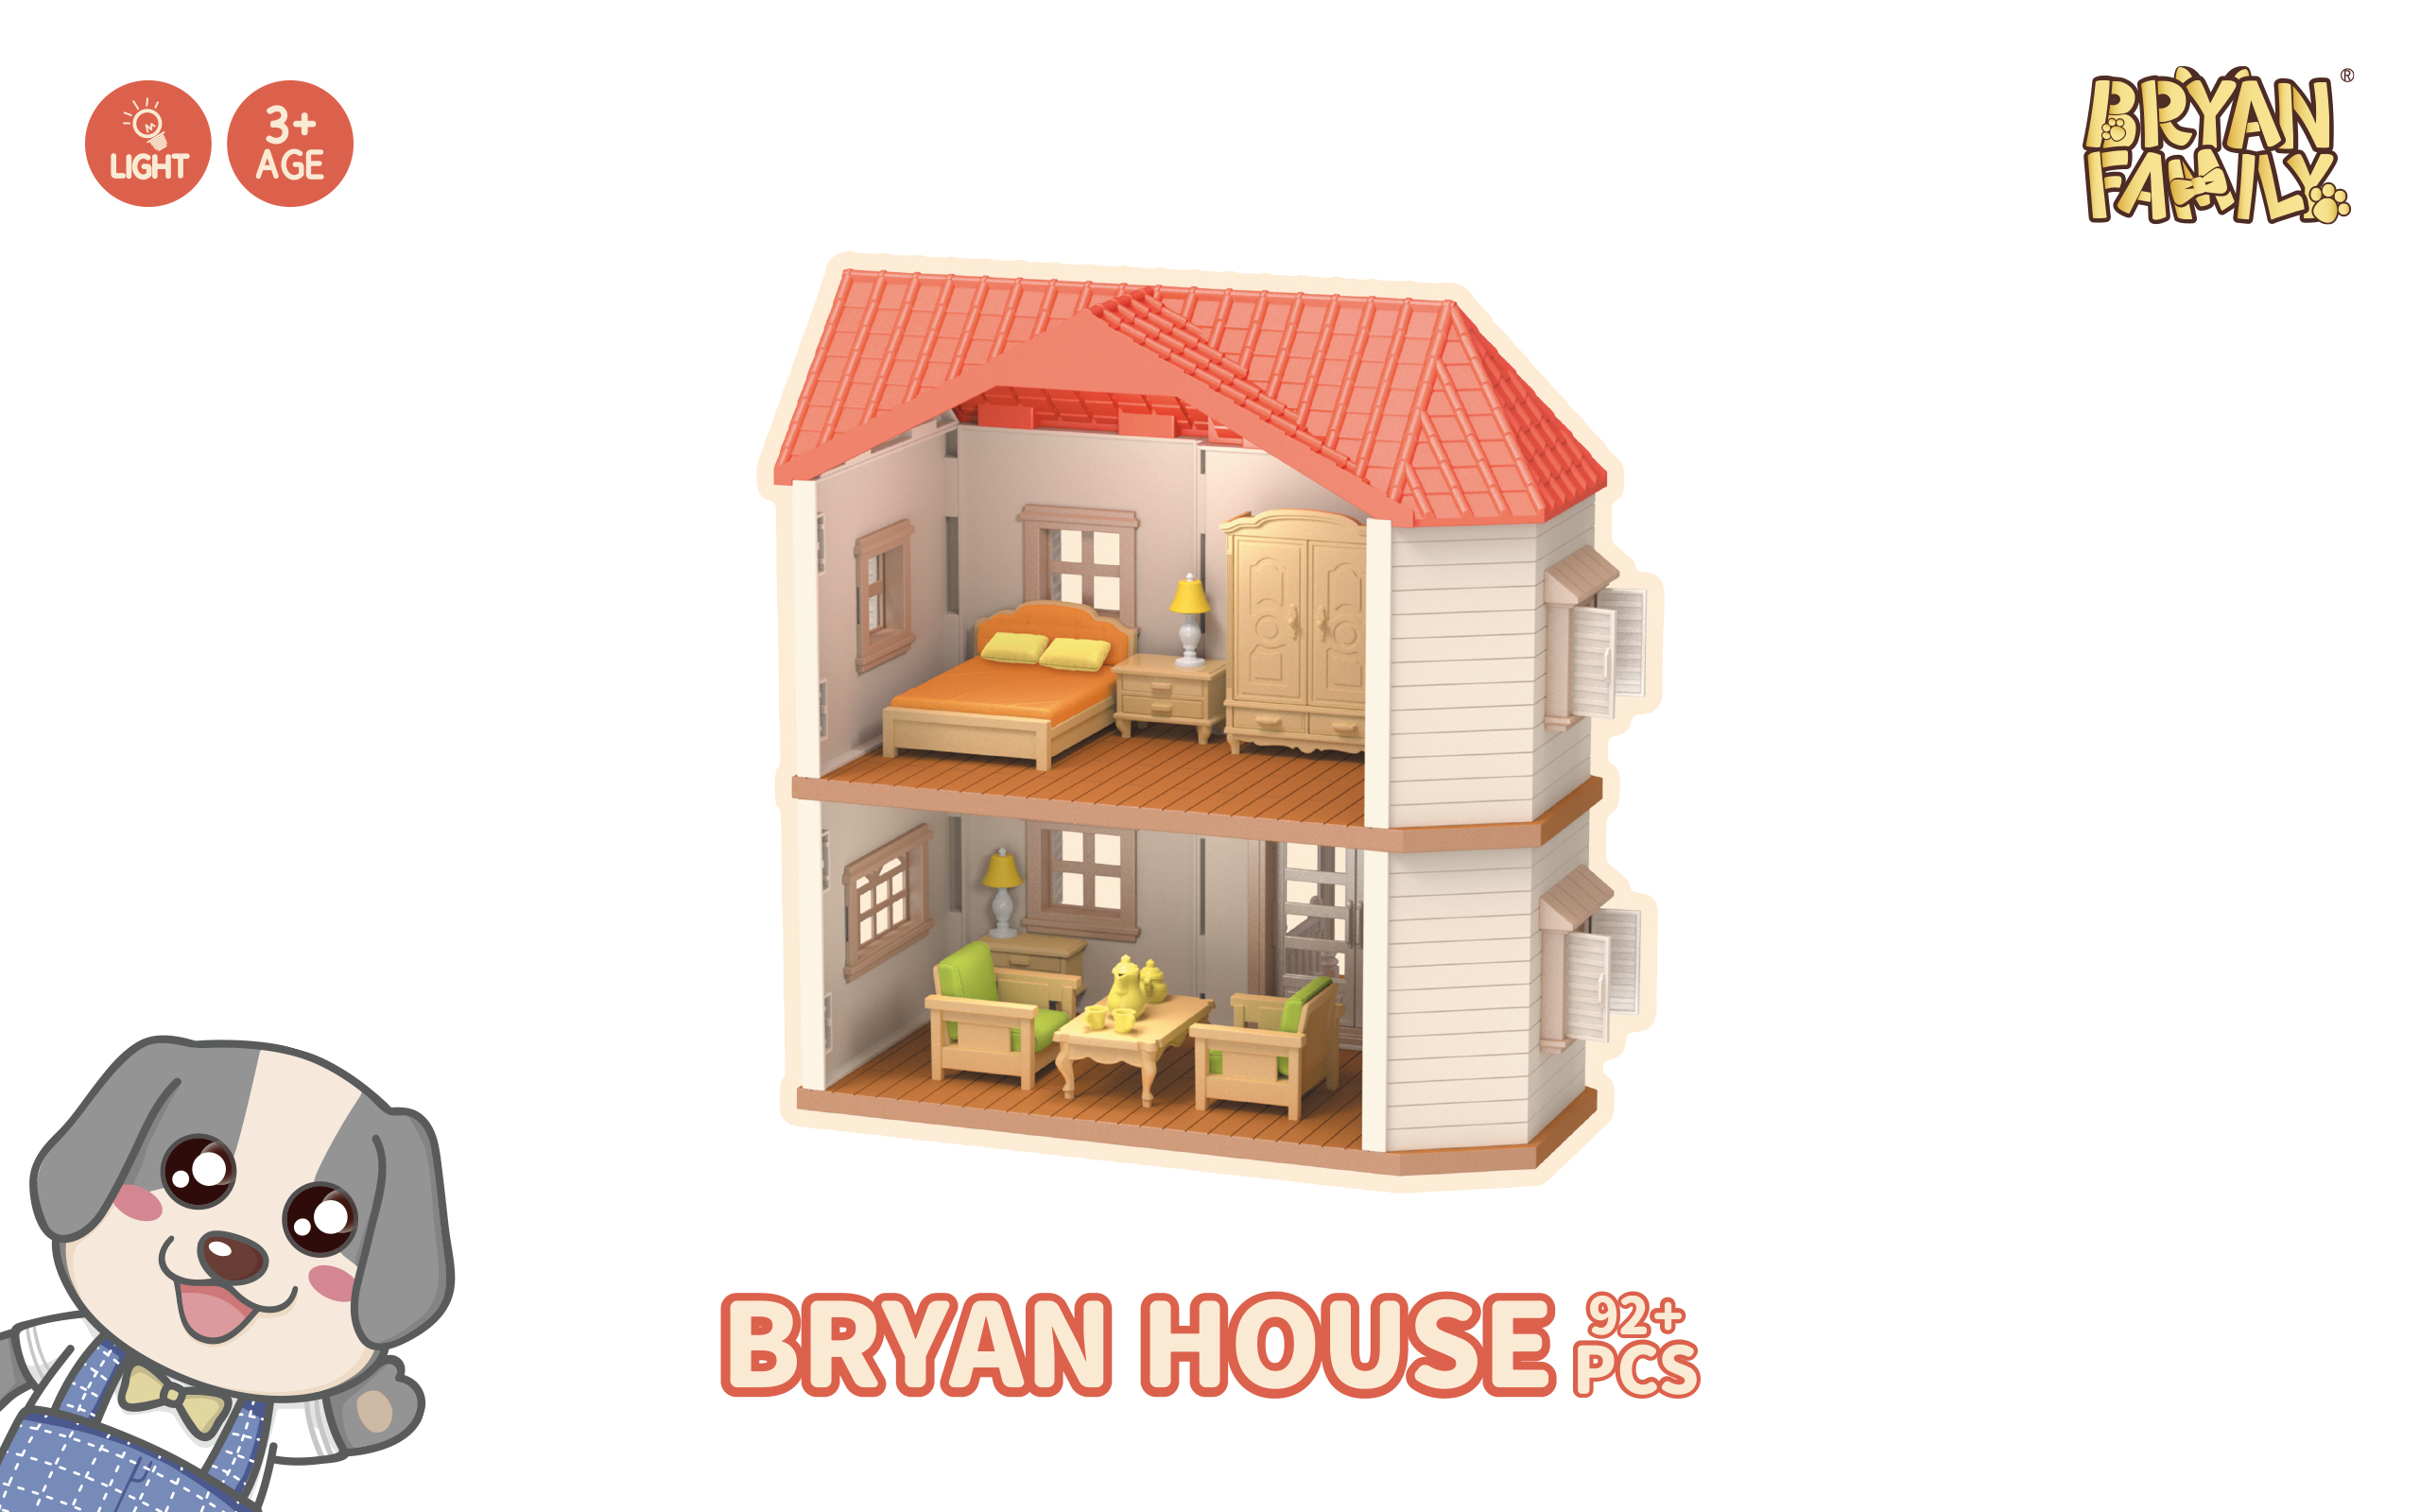 Bryan House 92+PCS